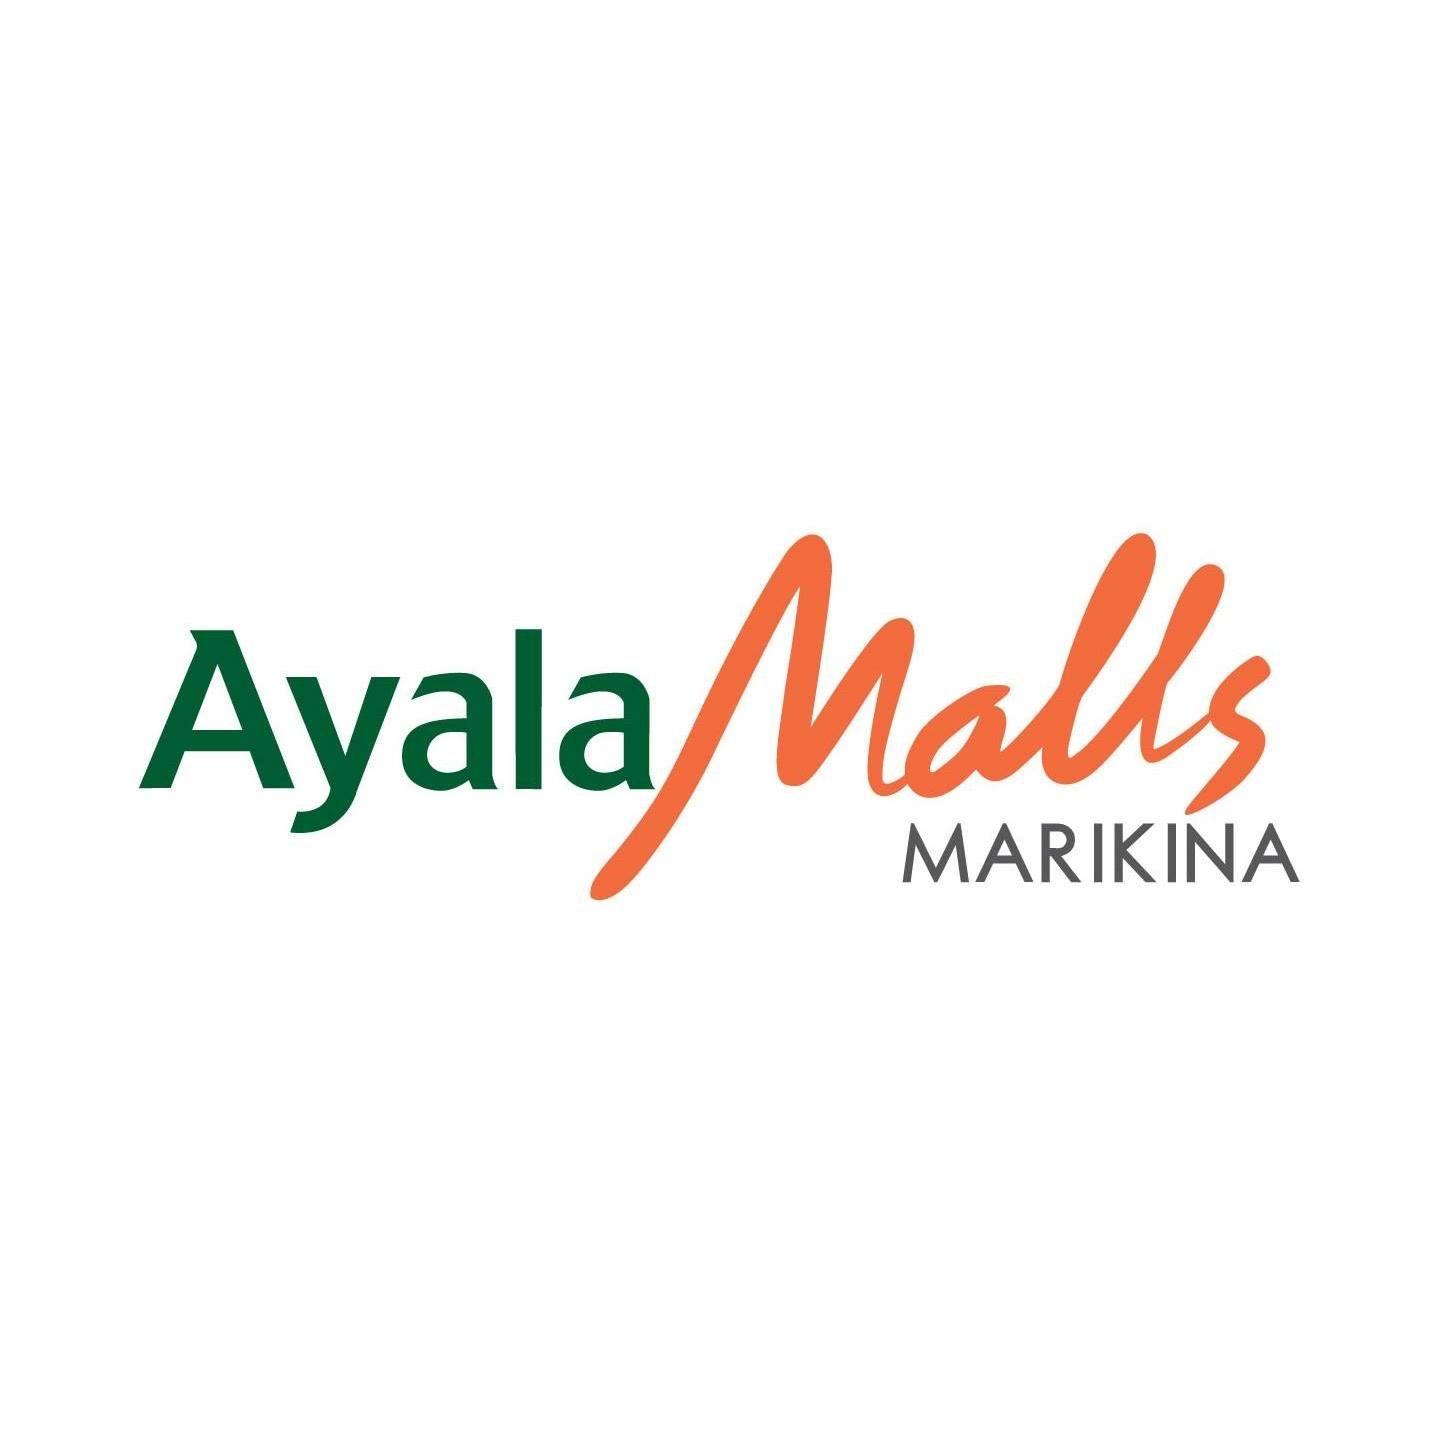 Ayala Logo - File:Ayala Malls Marikina logo.jpg